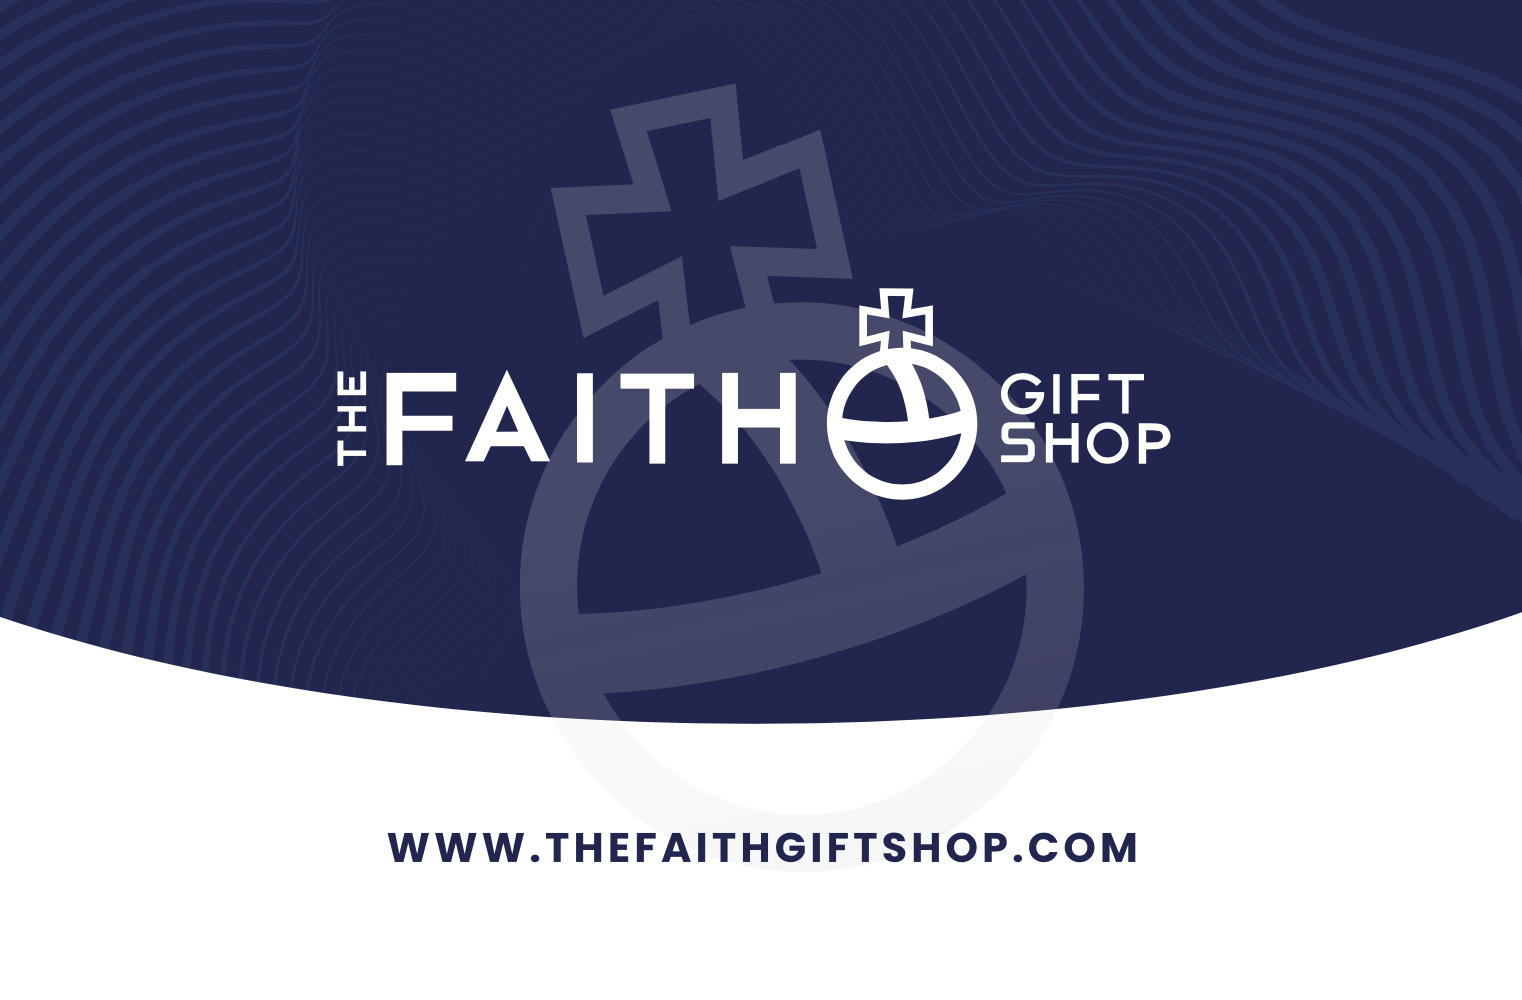 The Faith Gift Shop Gift Card